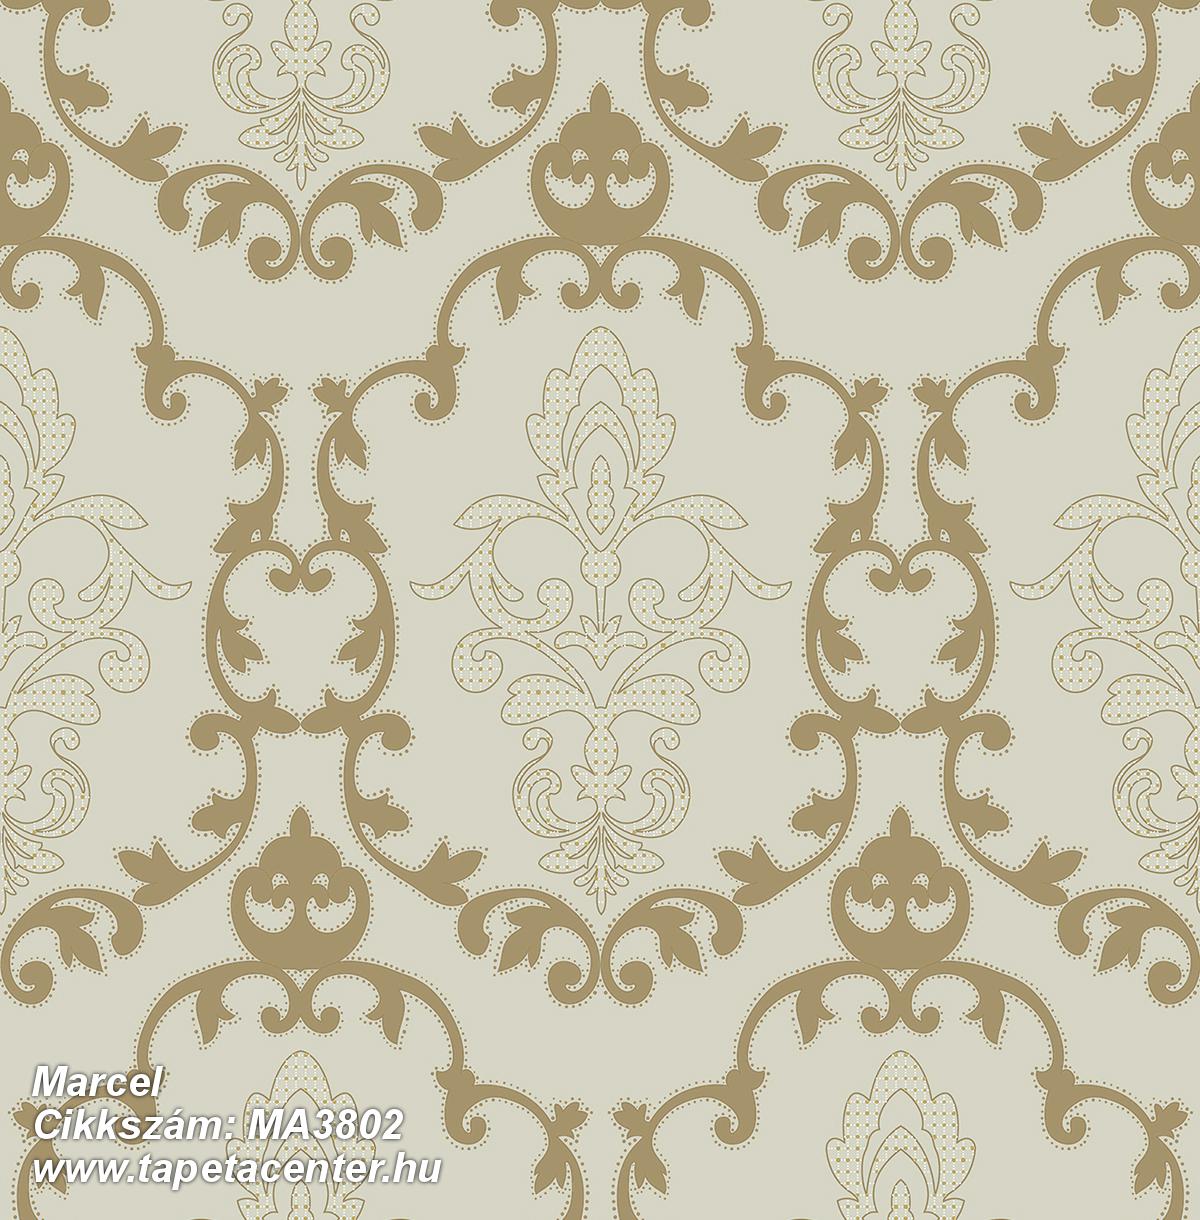 Barokk-klasszikus,különleges felületű,arany,bézs-drapp,gyengén mosható,vlies tapéta 